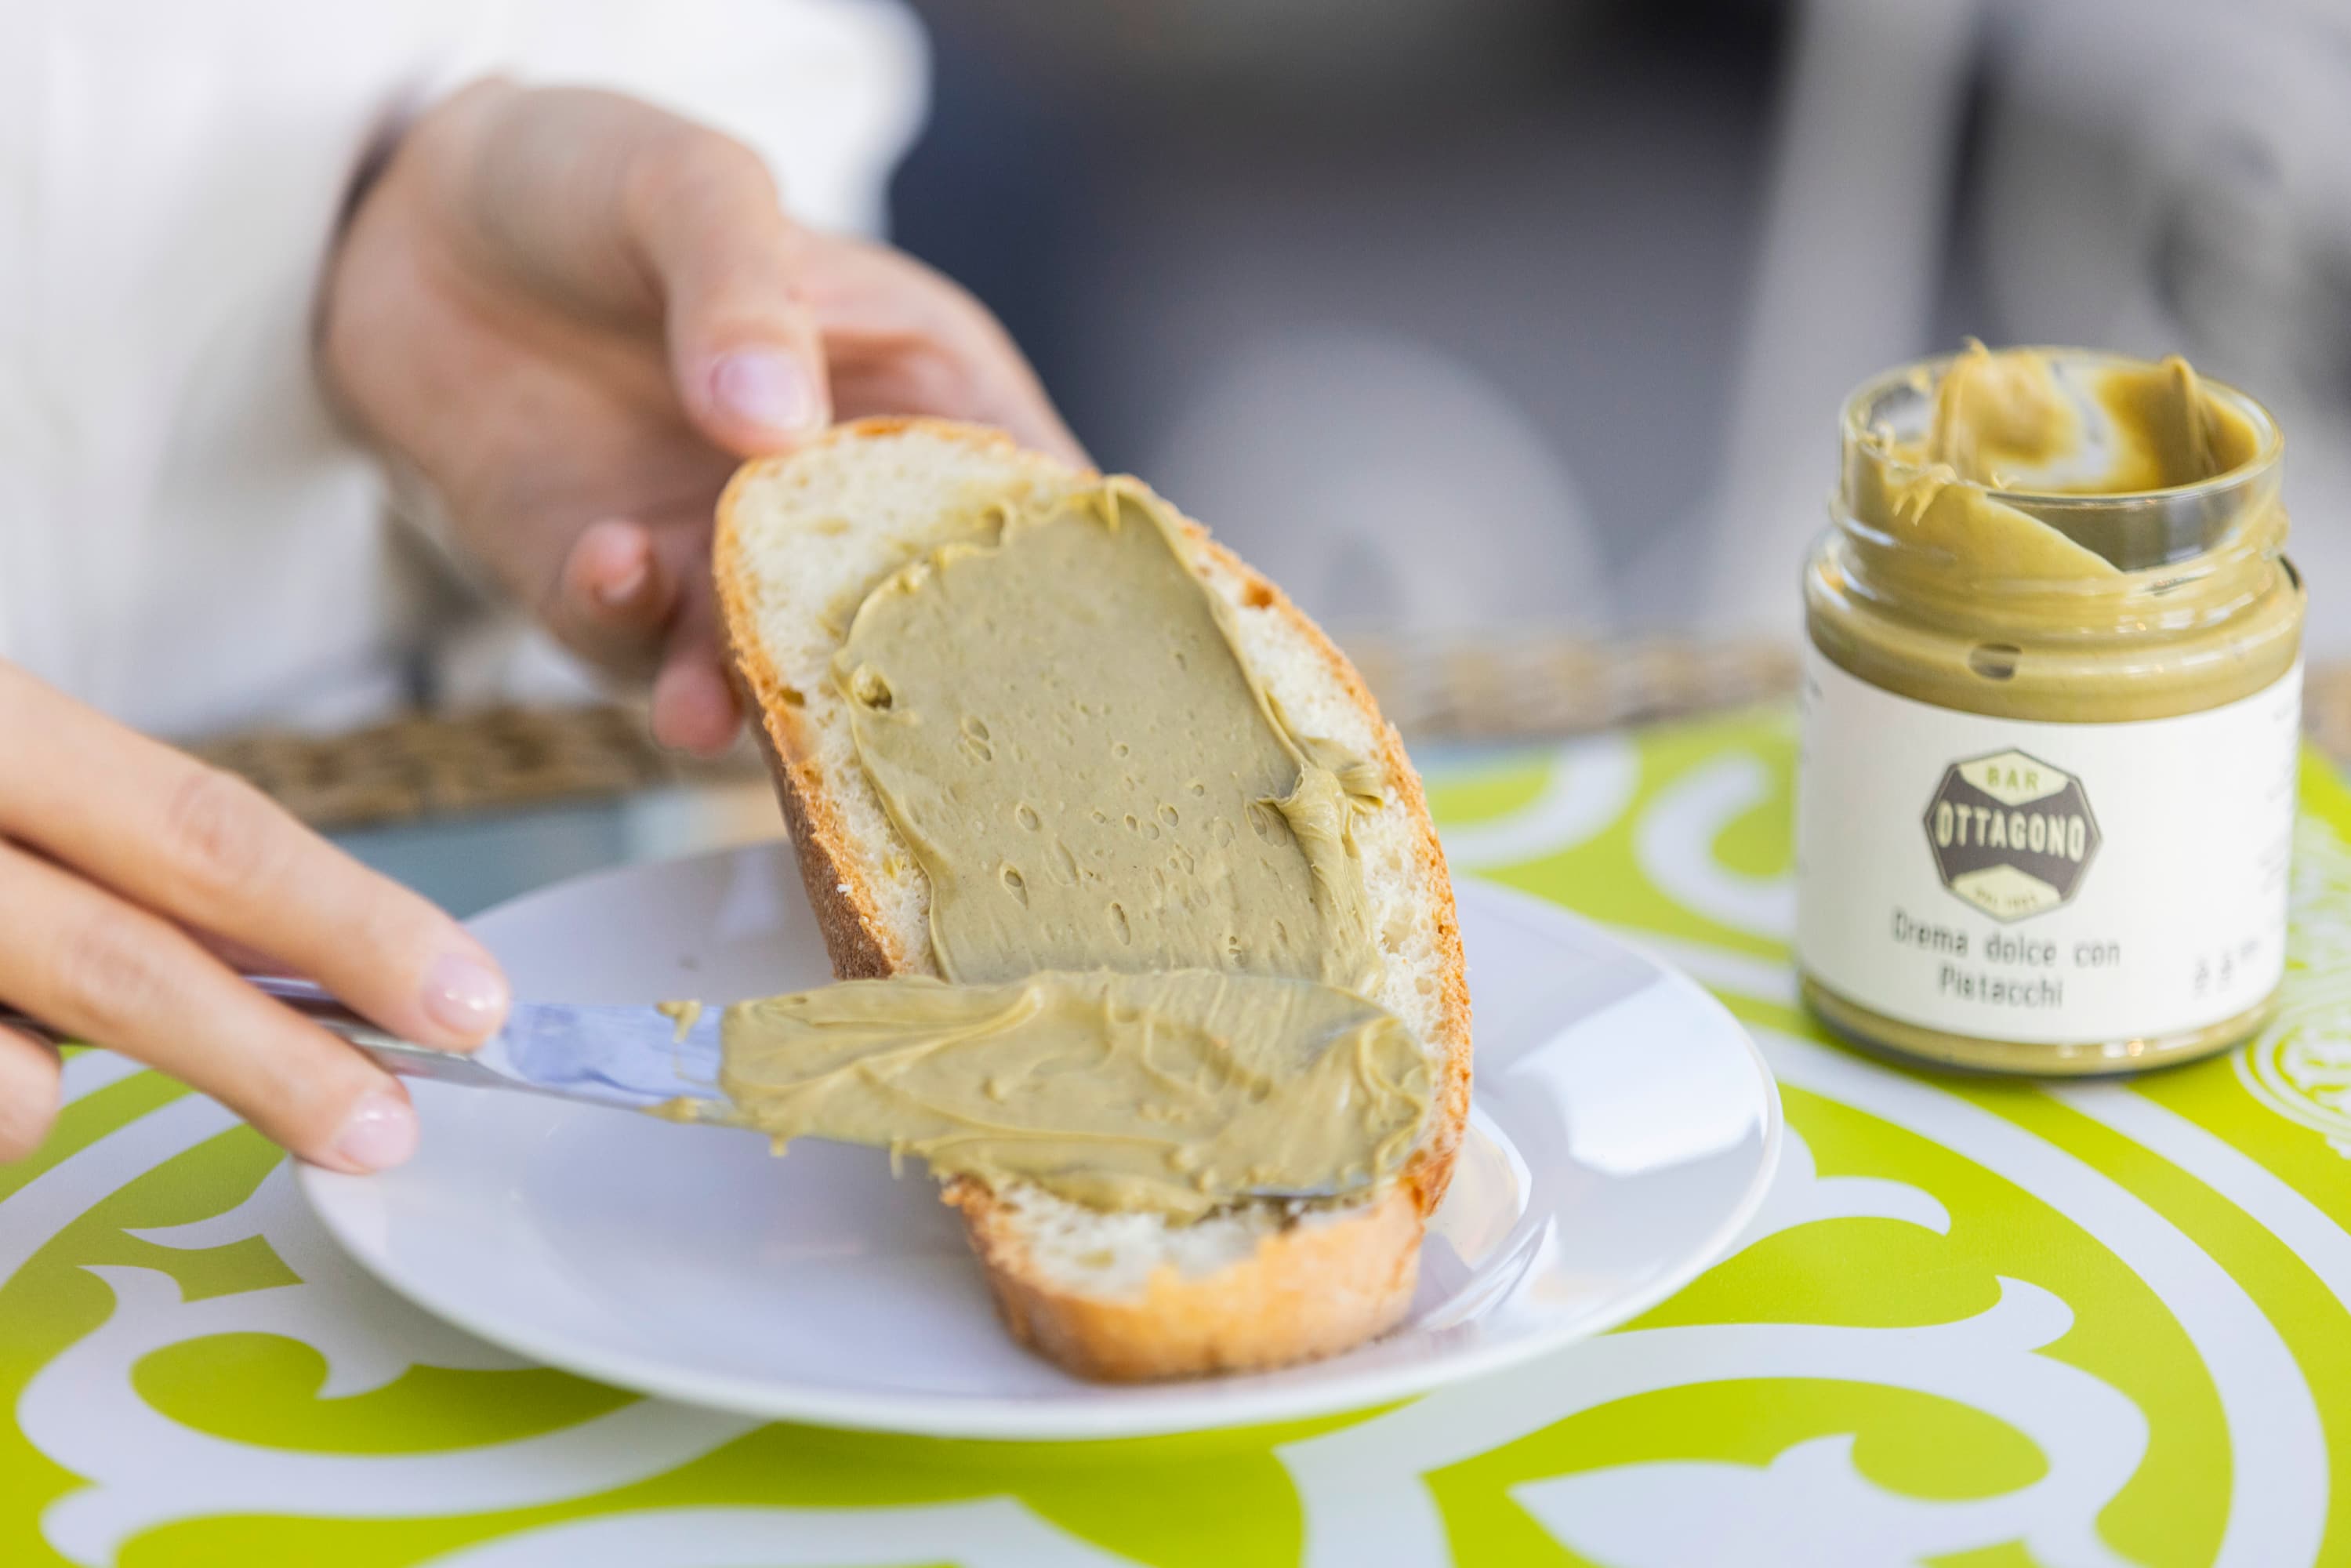 Crema dolce al pistacchio 30% 🌎 - Pasticceria Ottagono - Crema spalmabile al pistacchio - sicilia - catania - online